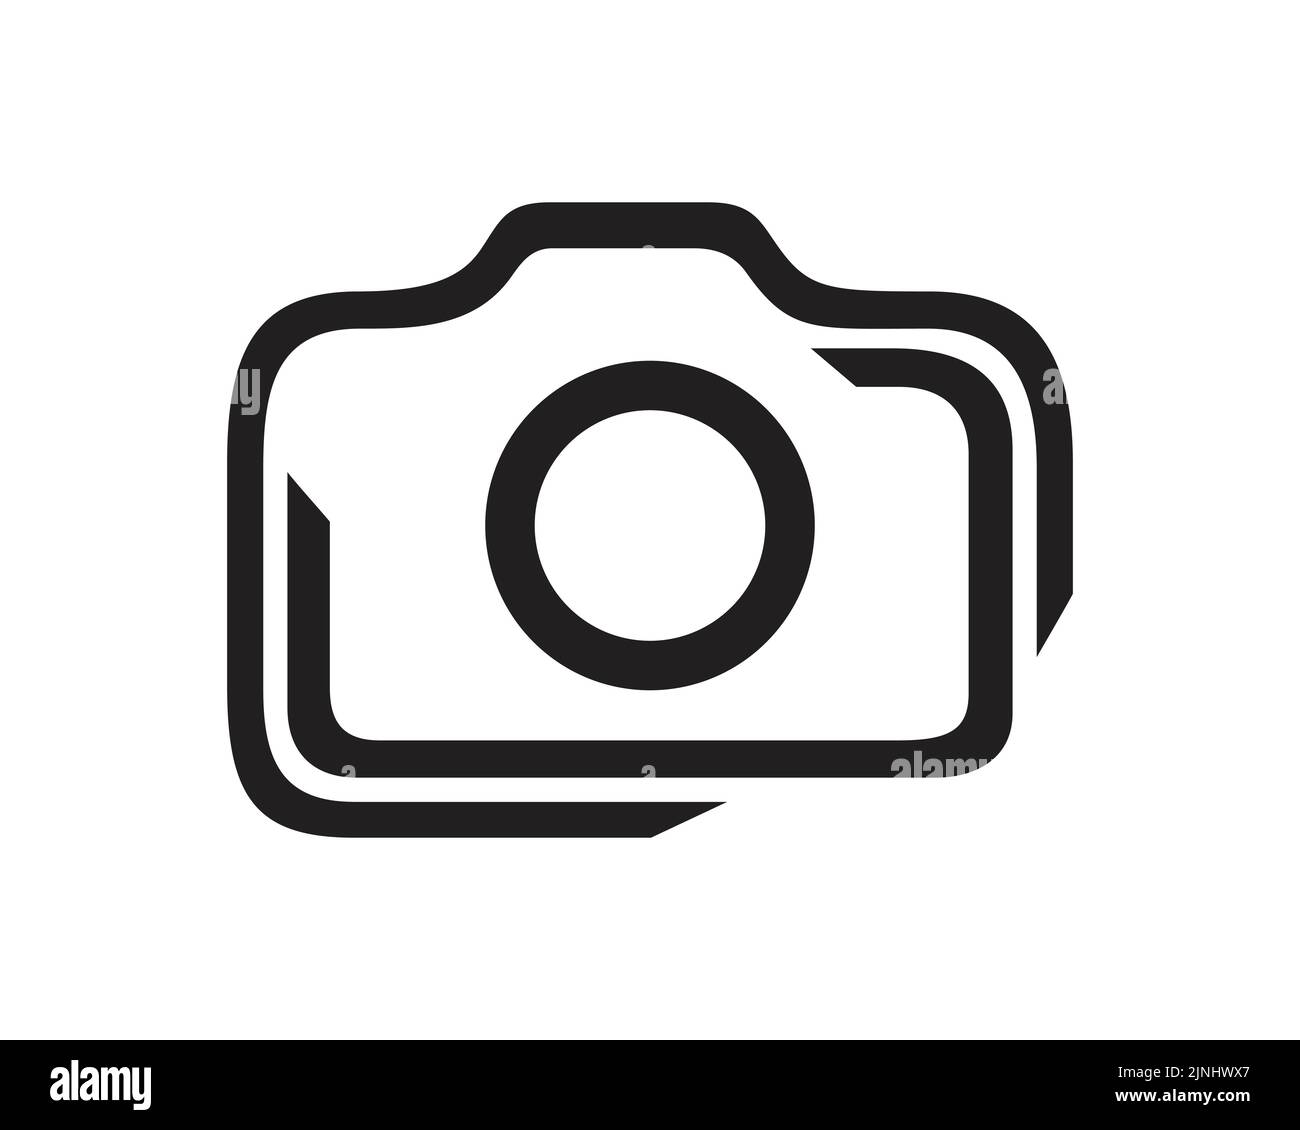 Einfache und kreative Kamera- und Fotografie-Illustration visualisiert mit Simple Illustration Stock Vektor